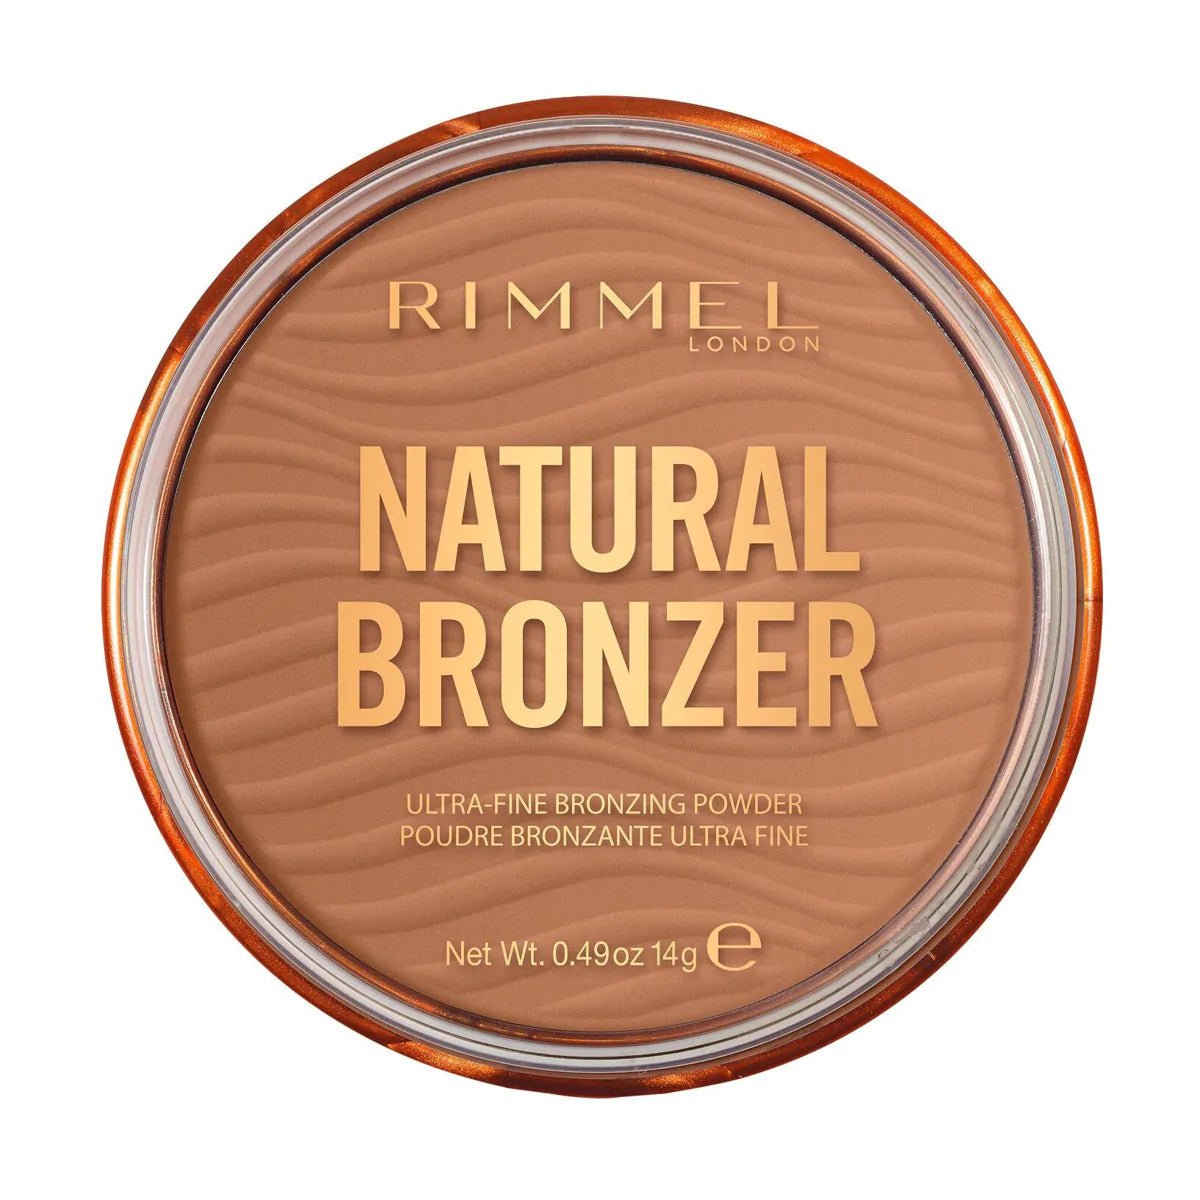 Rimmel Natural Bronzer Bronzing Powder 002 Sunbronze - AllurebeautypkRimmel Natural Bronzer Bronzing Powder 002 Sunbronze